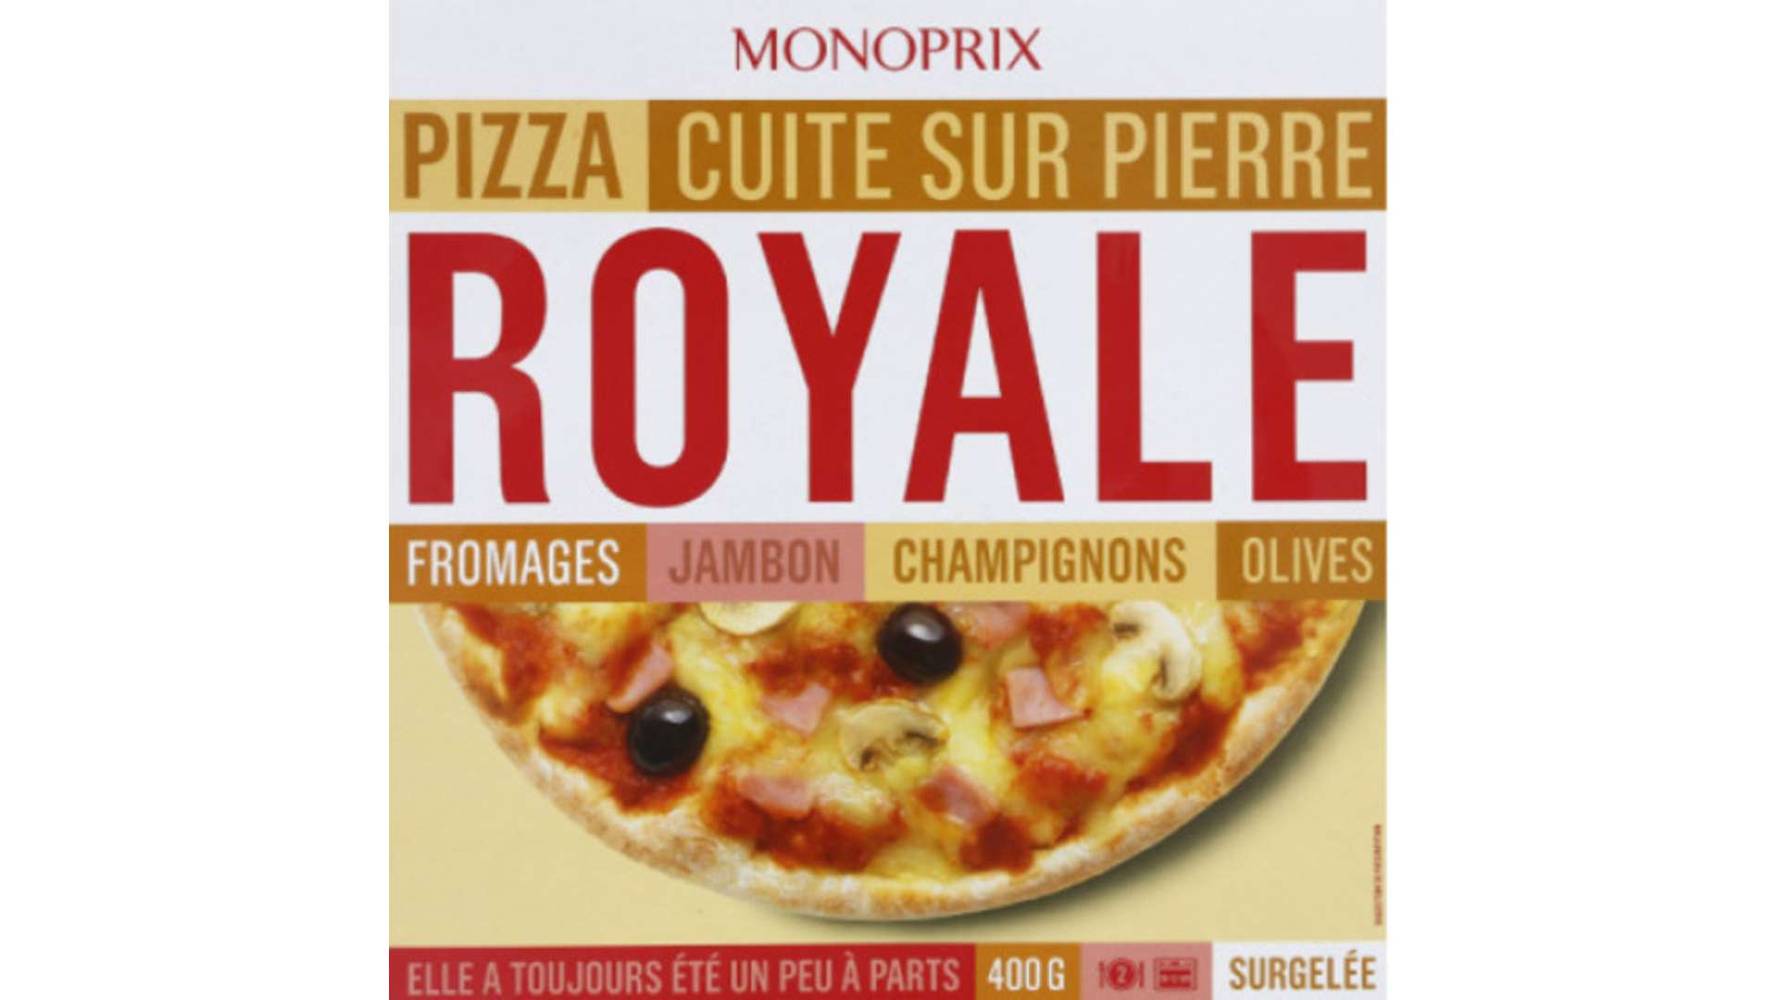 Monoprix Pizza Royale fromages jambon champignons olives, surgelés La pizza de 400g